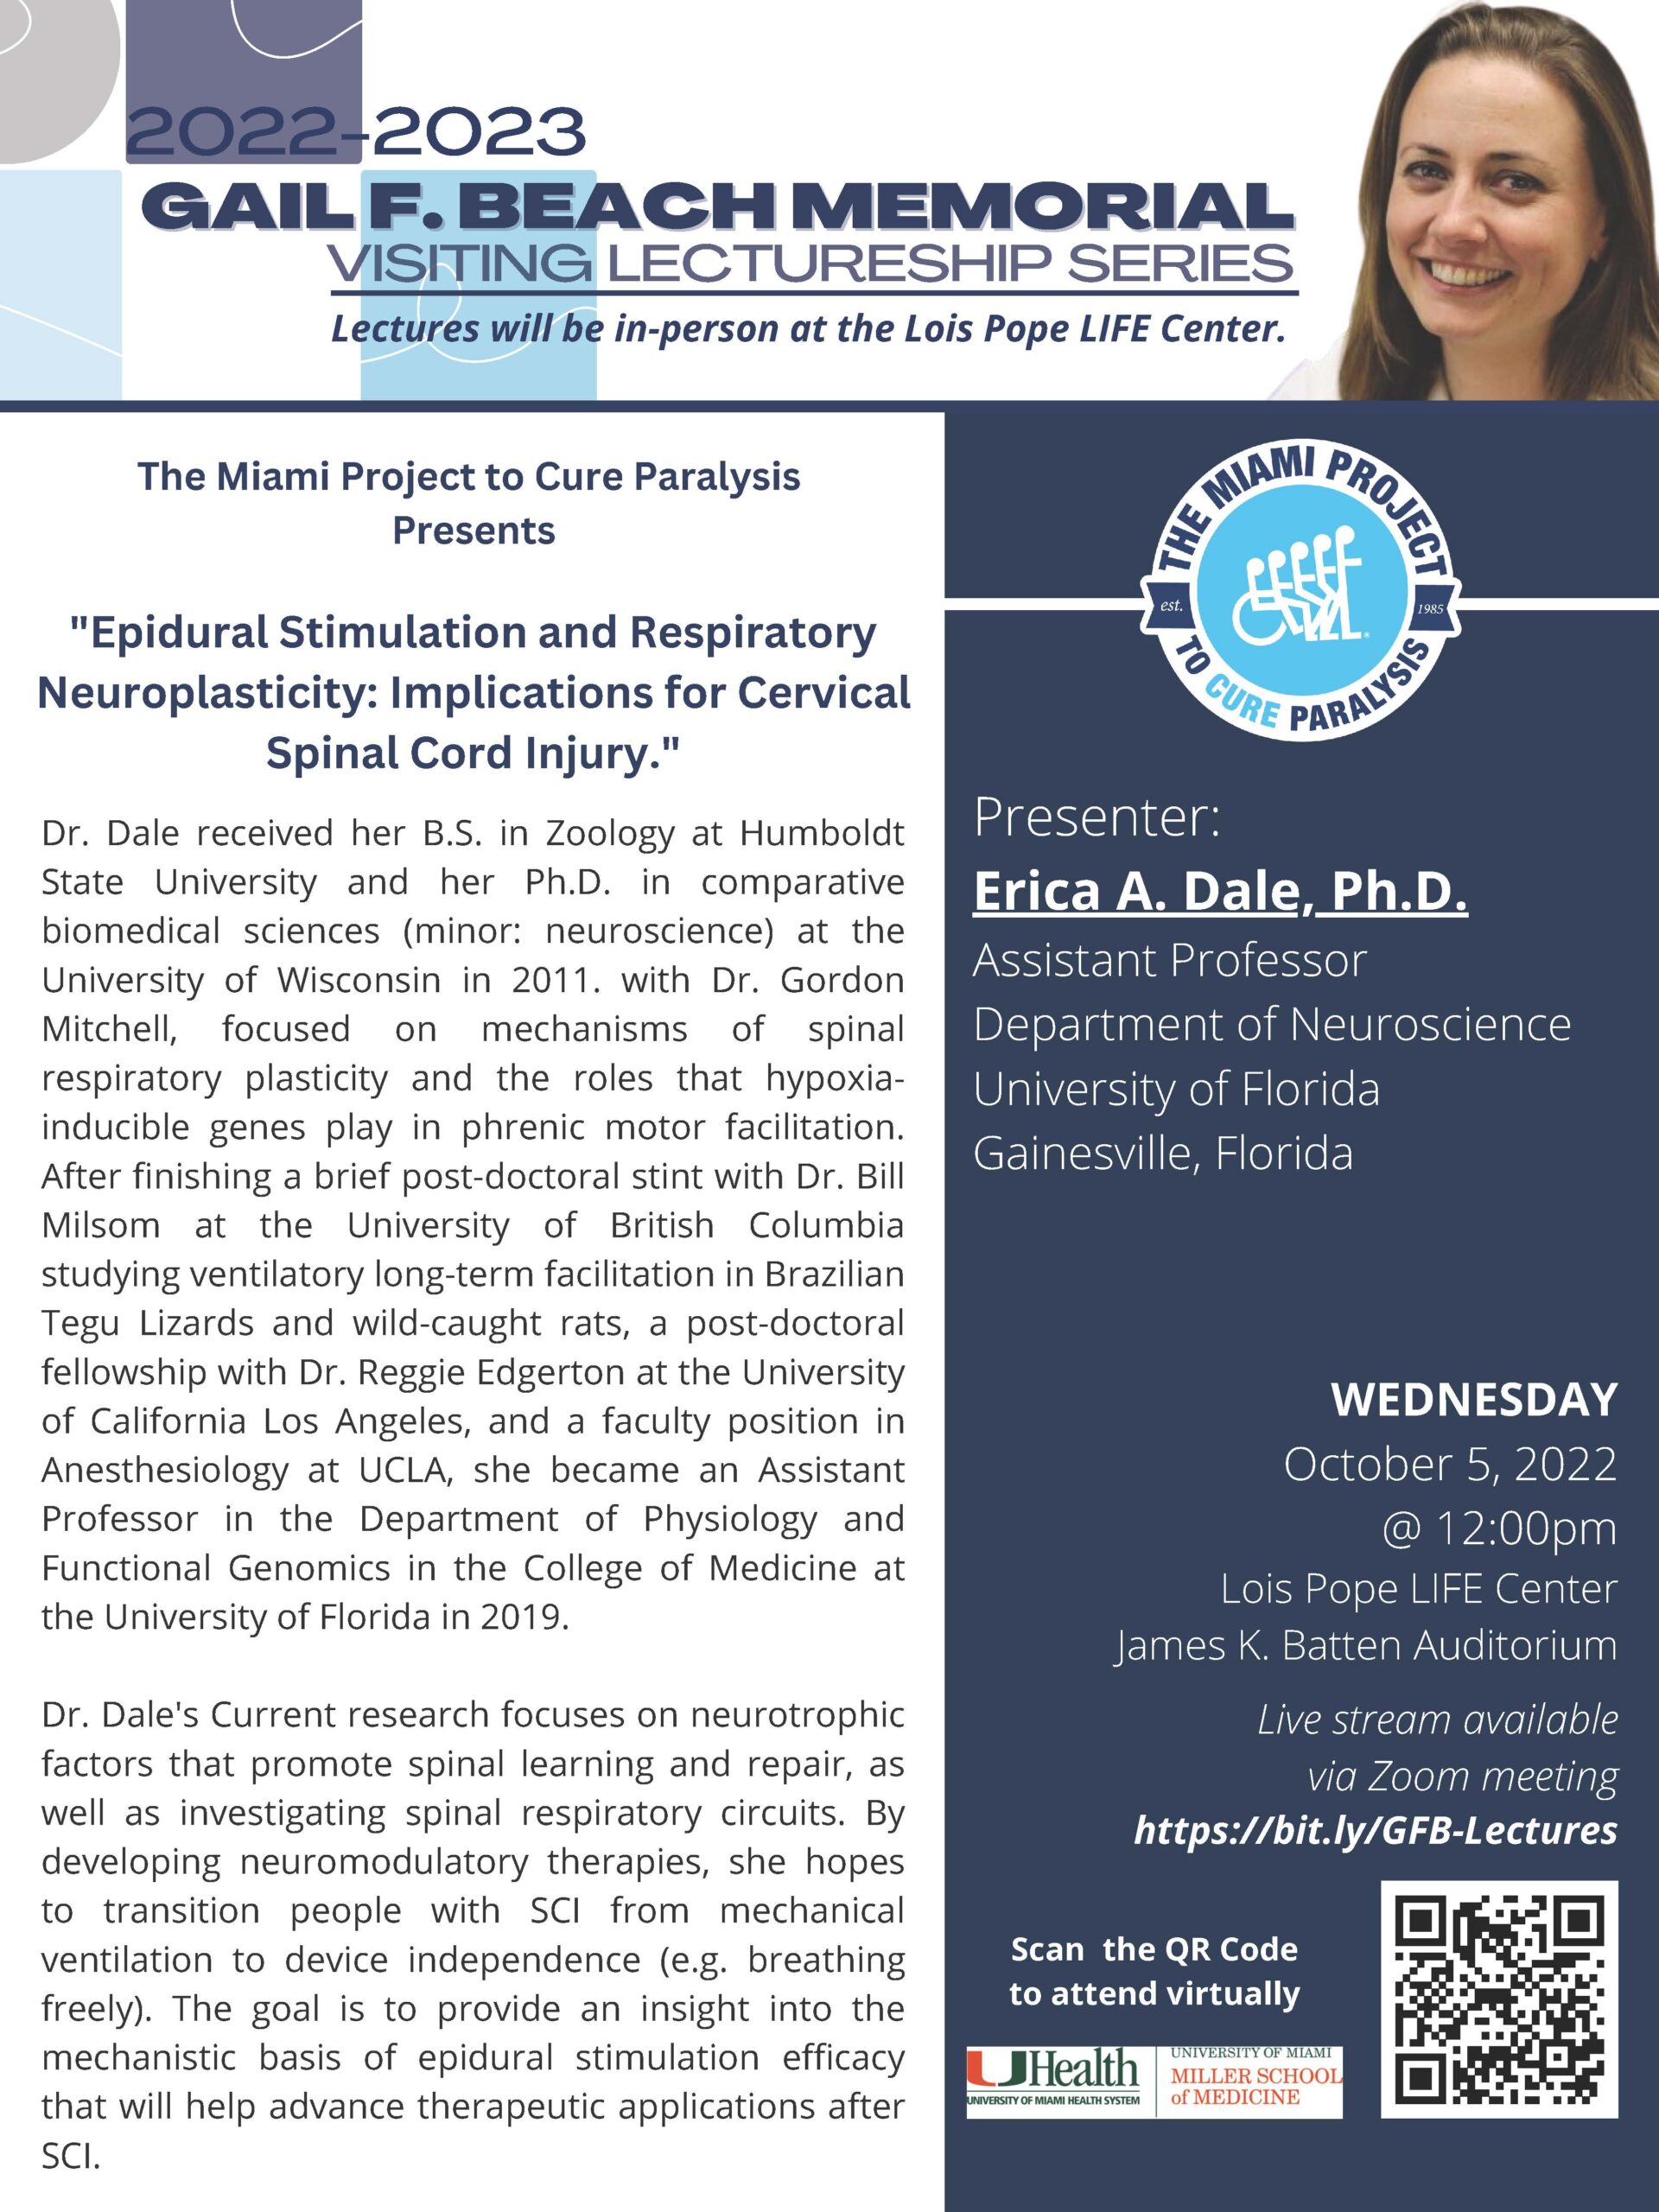 Gail F. Beach Memorial Lectureship Series - Erica A. Dale, Ph.D.